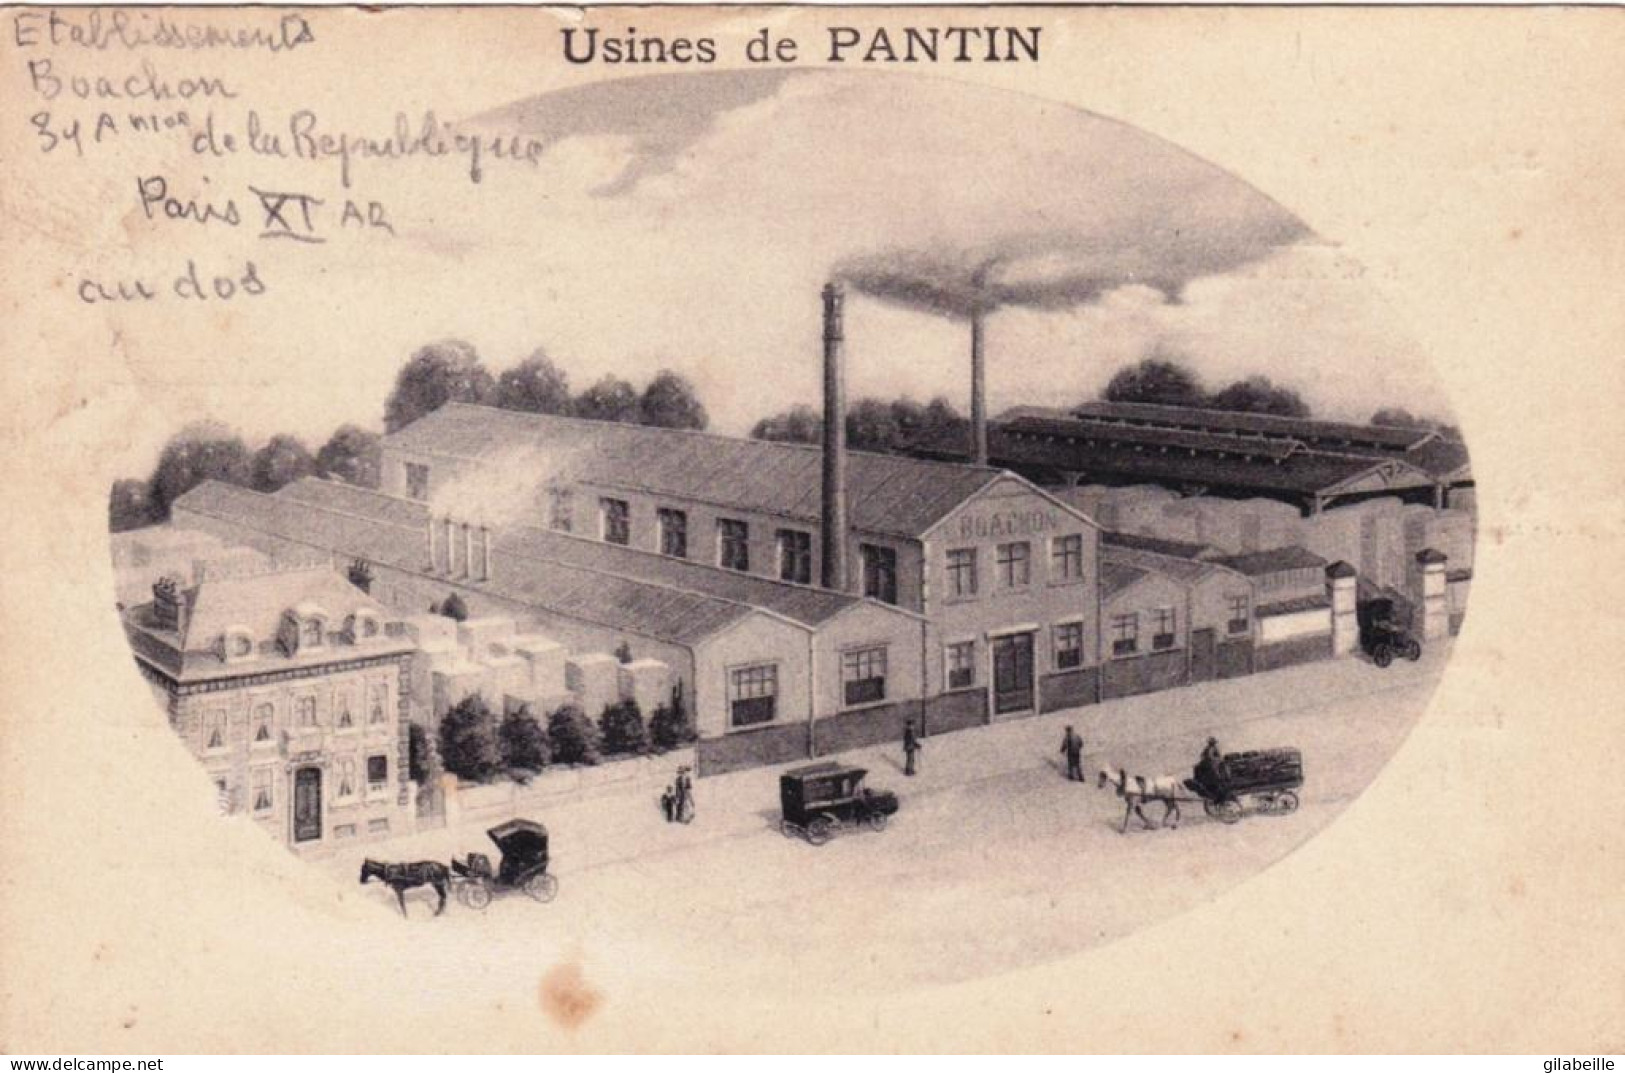 93 - Usines De PANTIN  - Etablissement L.Boachon 31 Avenue De La République Paris XI - Pantin